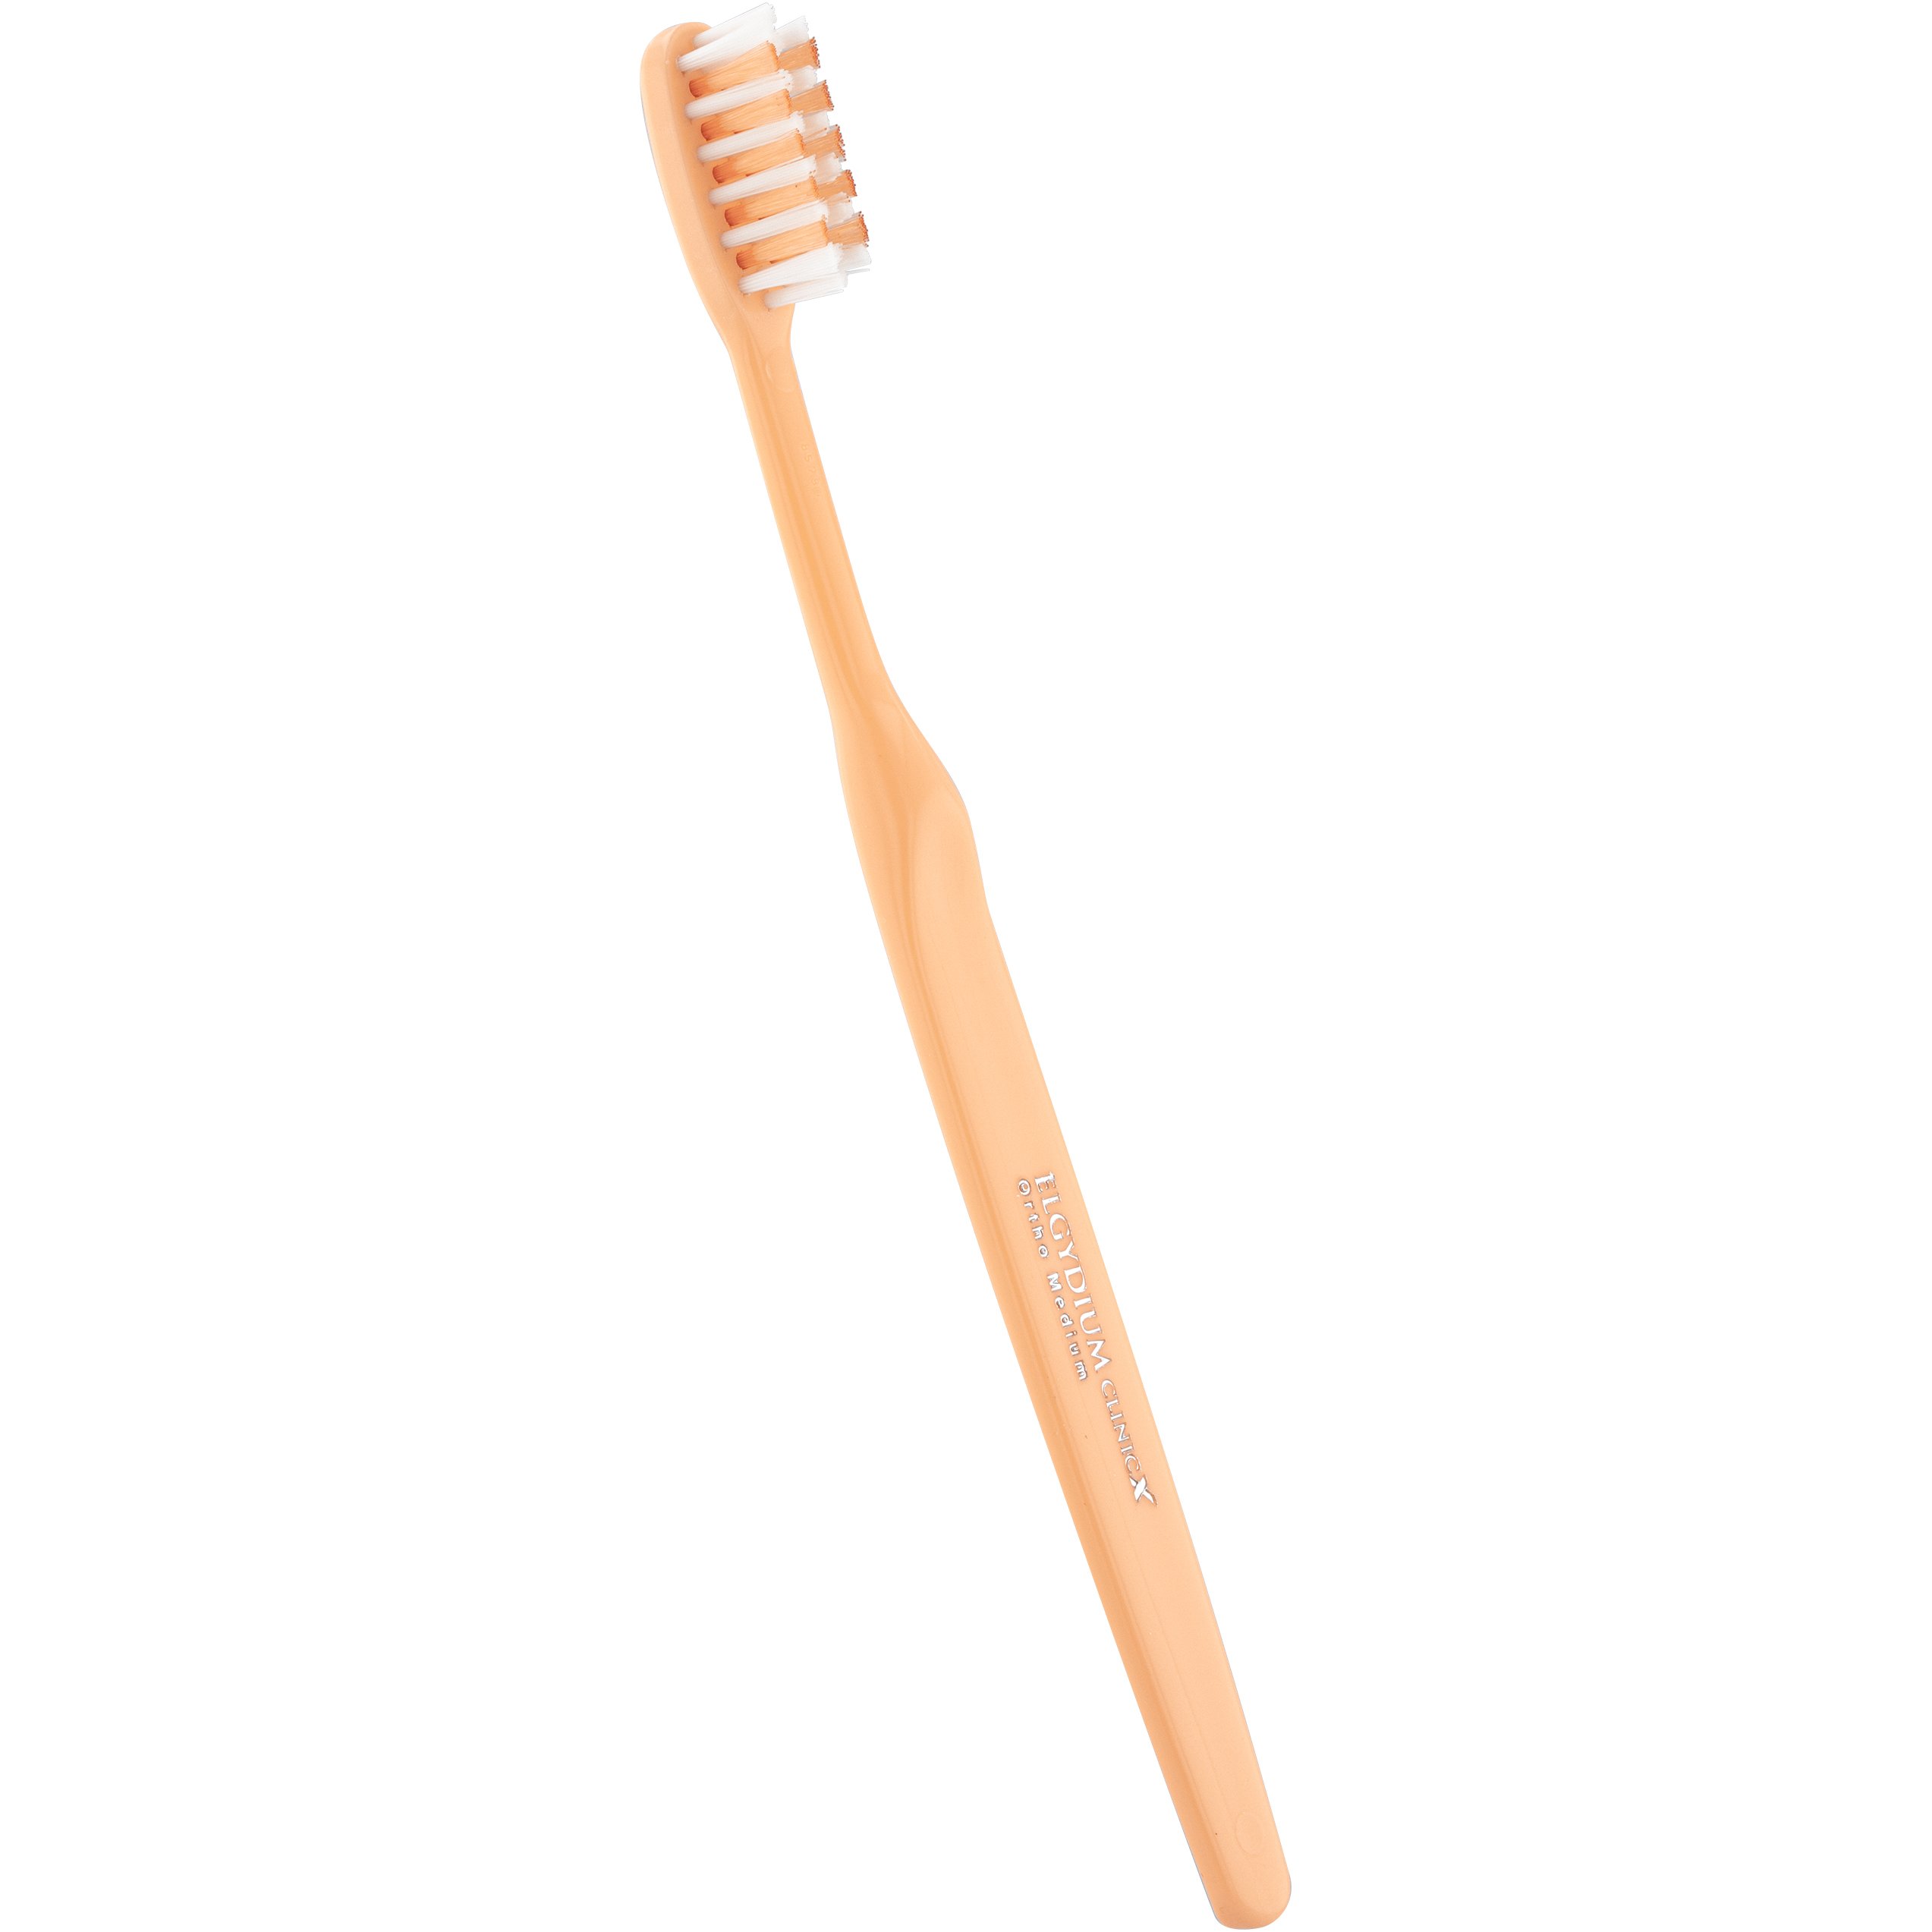 Elgydium Clinic Ortho-X Medium Toothbrush Χειροκίνητη Οδοντόβουρτσα Μέτριας Σκληρότητας Κατάλληλη για Καθαρισμό Ορθοδοντικών Μηχανισμών 1 Τεμάχιο – Κίτρινο